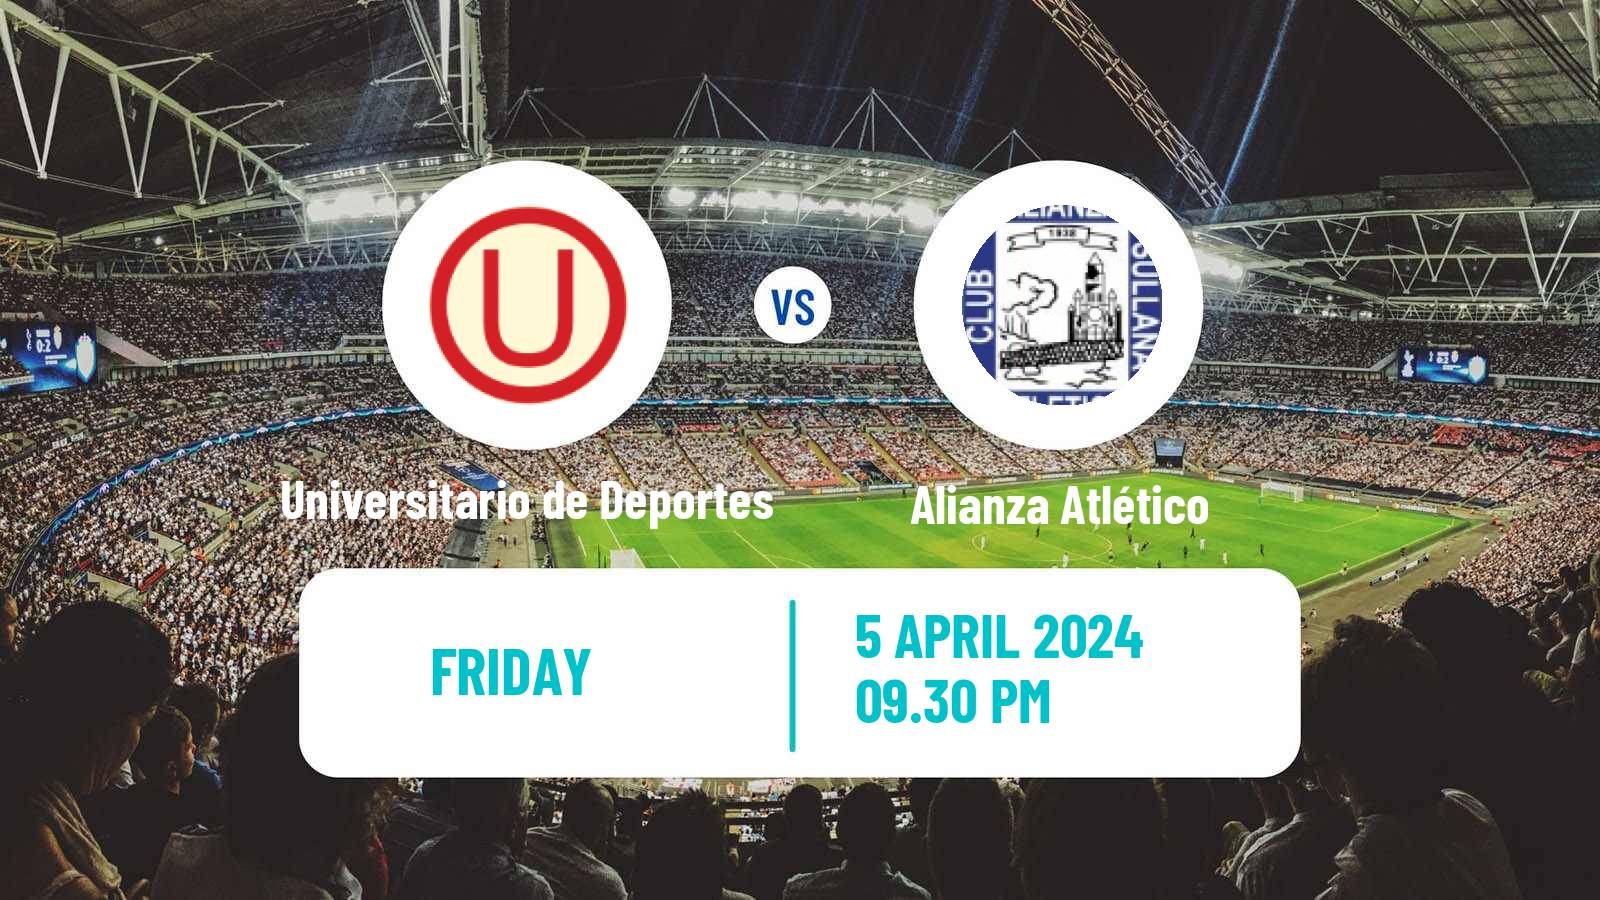 Soccer Peruvian Liga 1 Universitario de Deportes - Alianza Atlético